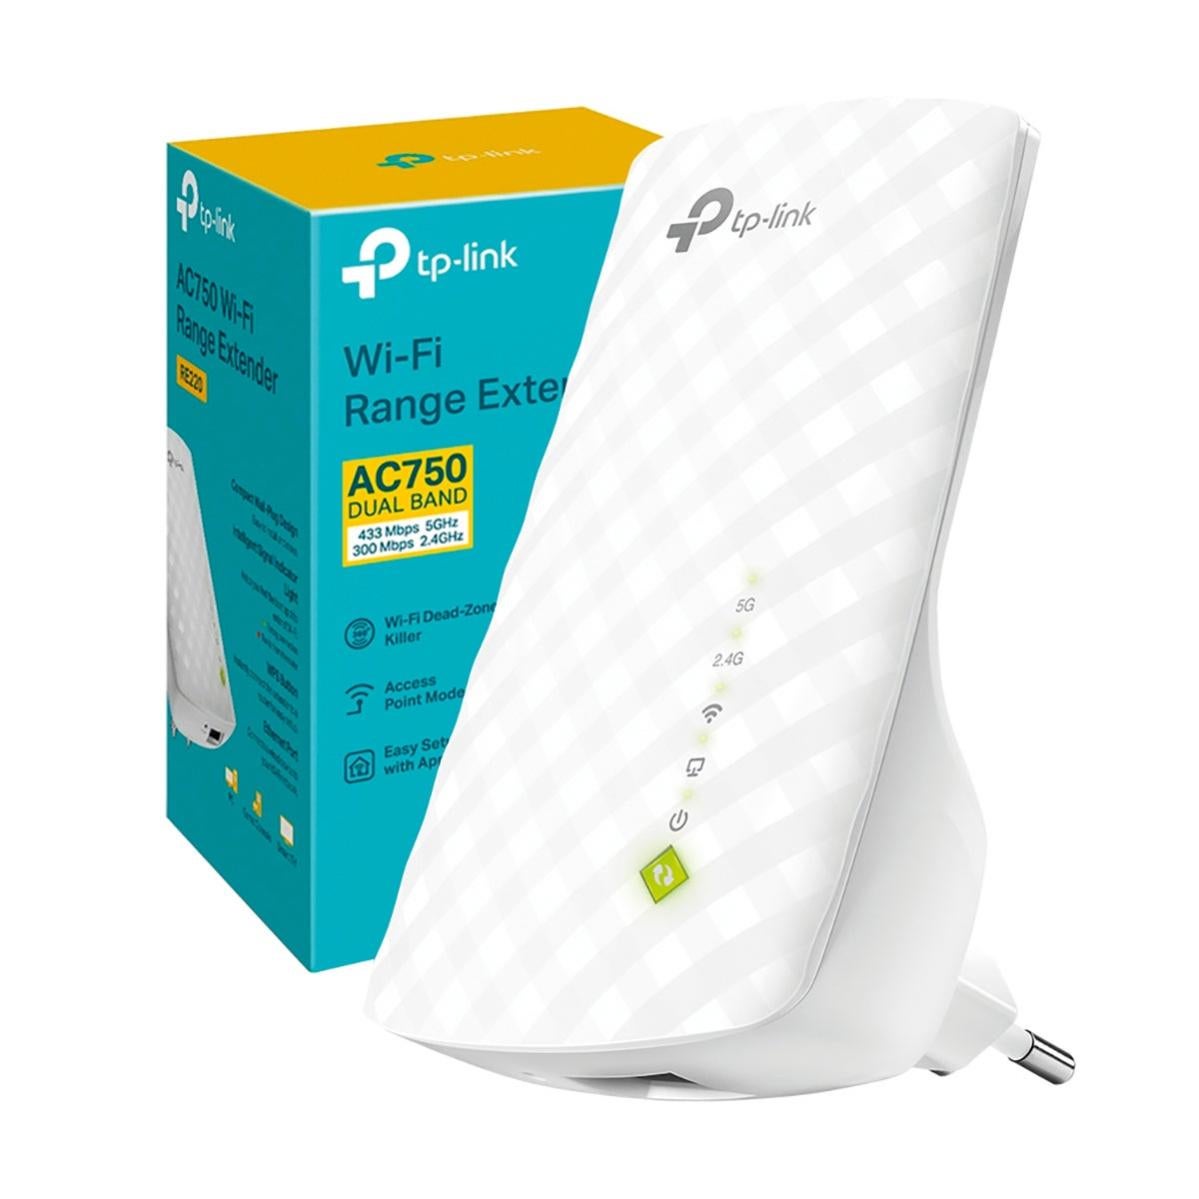 Ripetitore wi-fi TP-LINK AC750